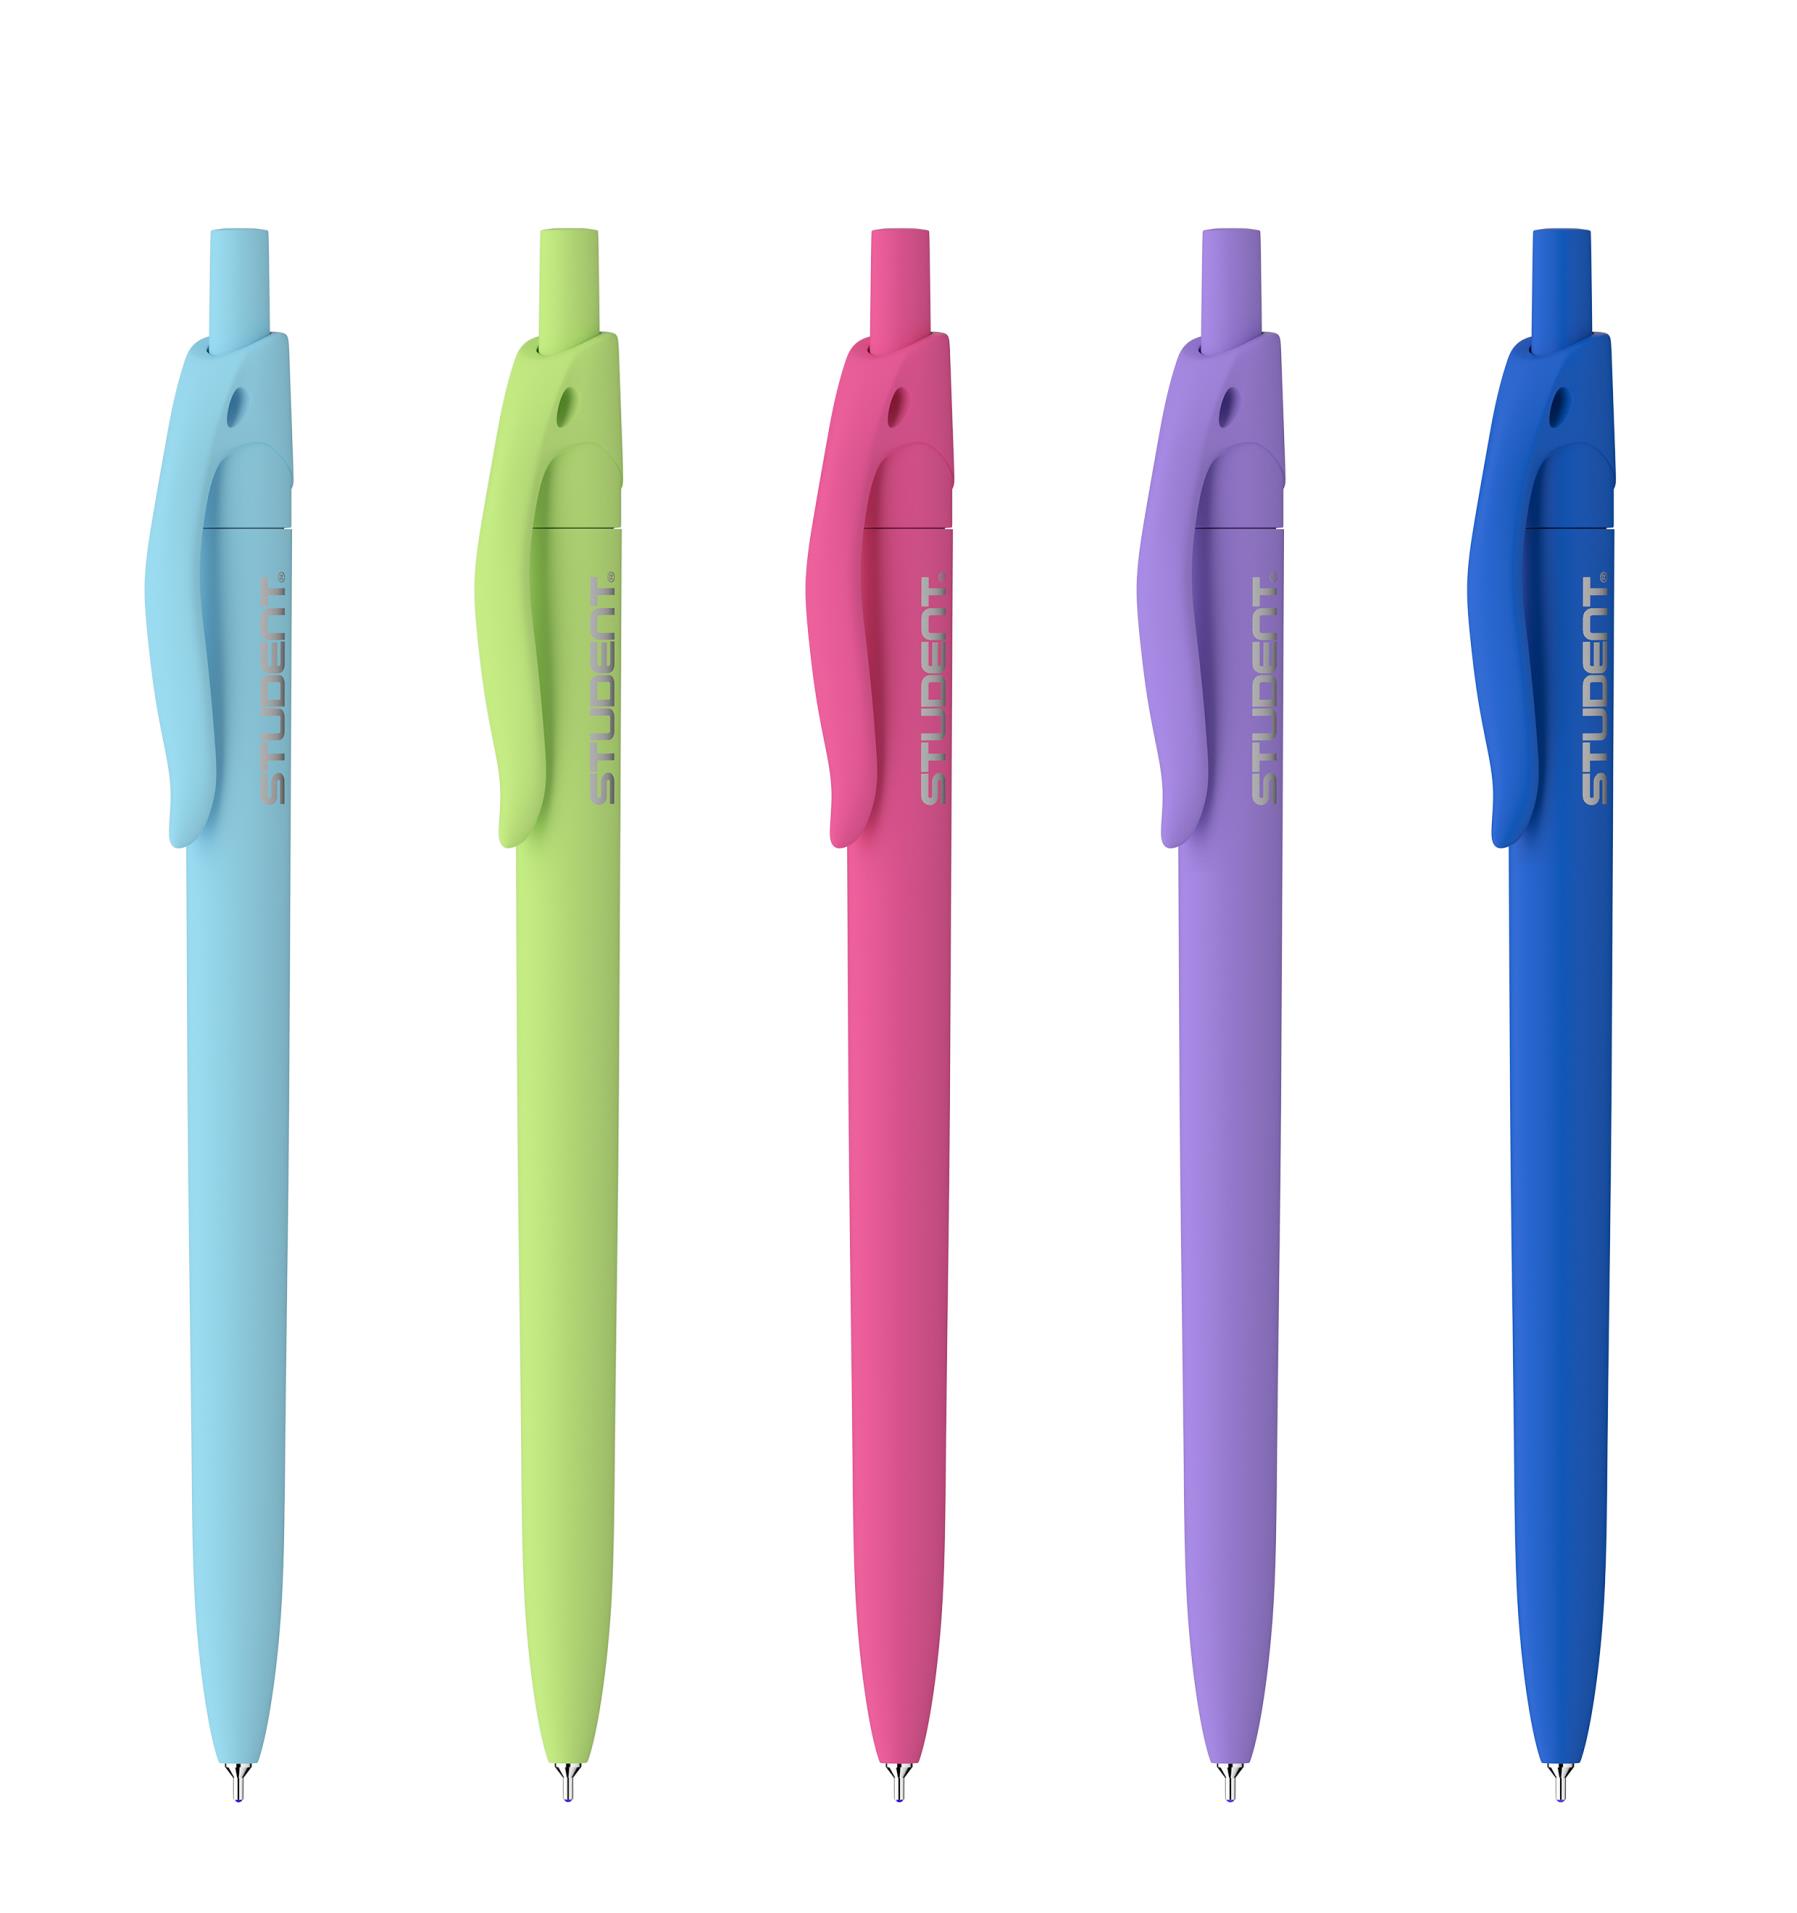 Kuličkové pero ICO Student Soft Touch - mix barev